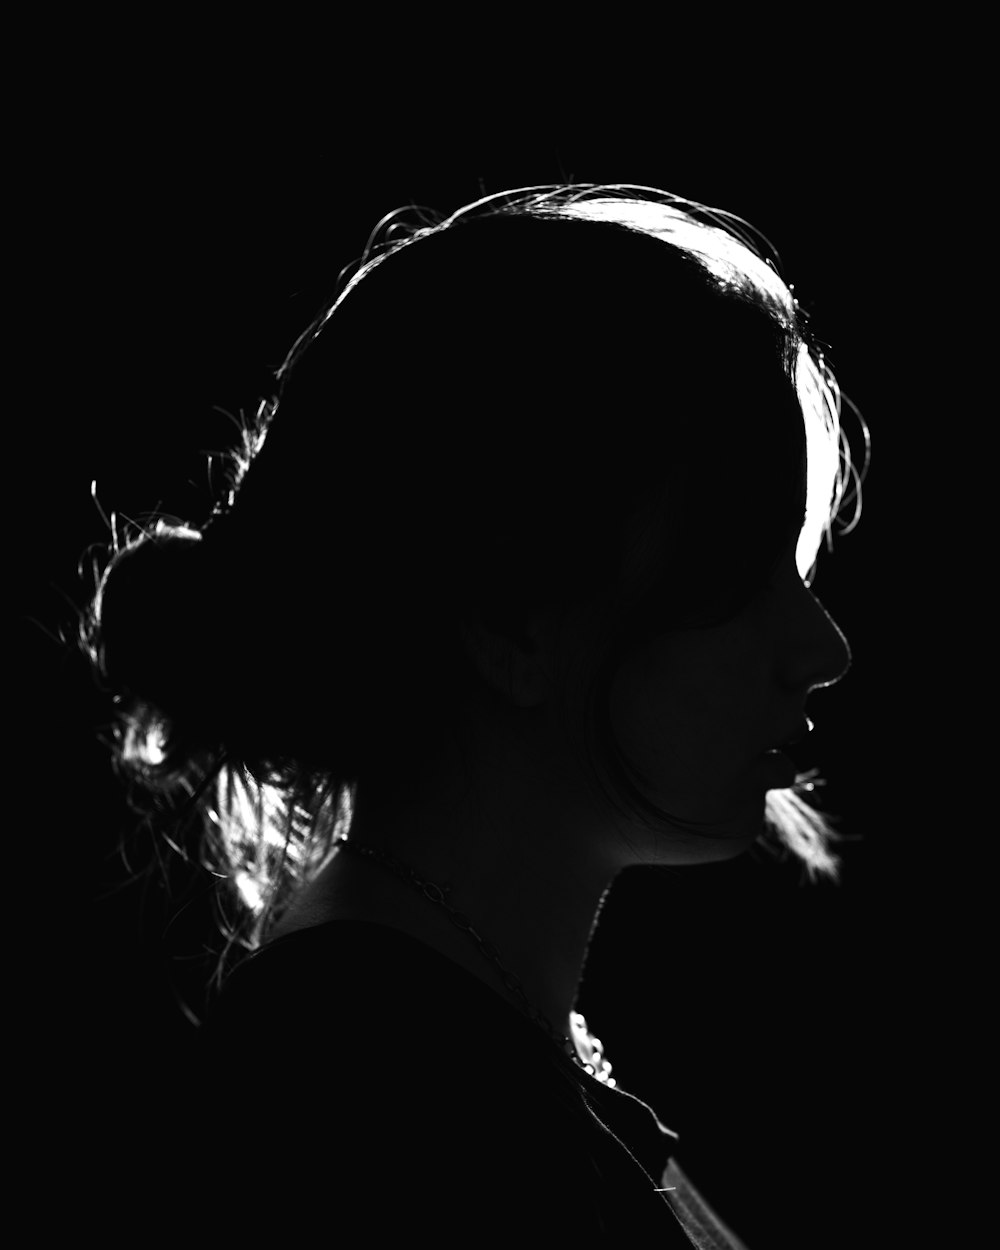 Una foto en blanco y negro del perfil de una mujer